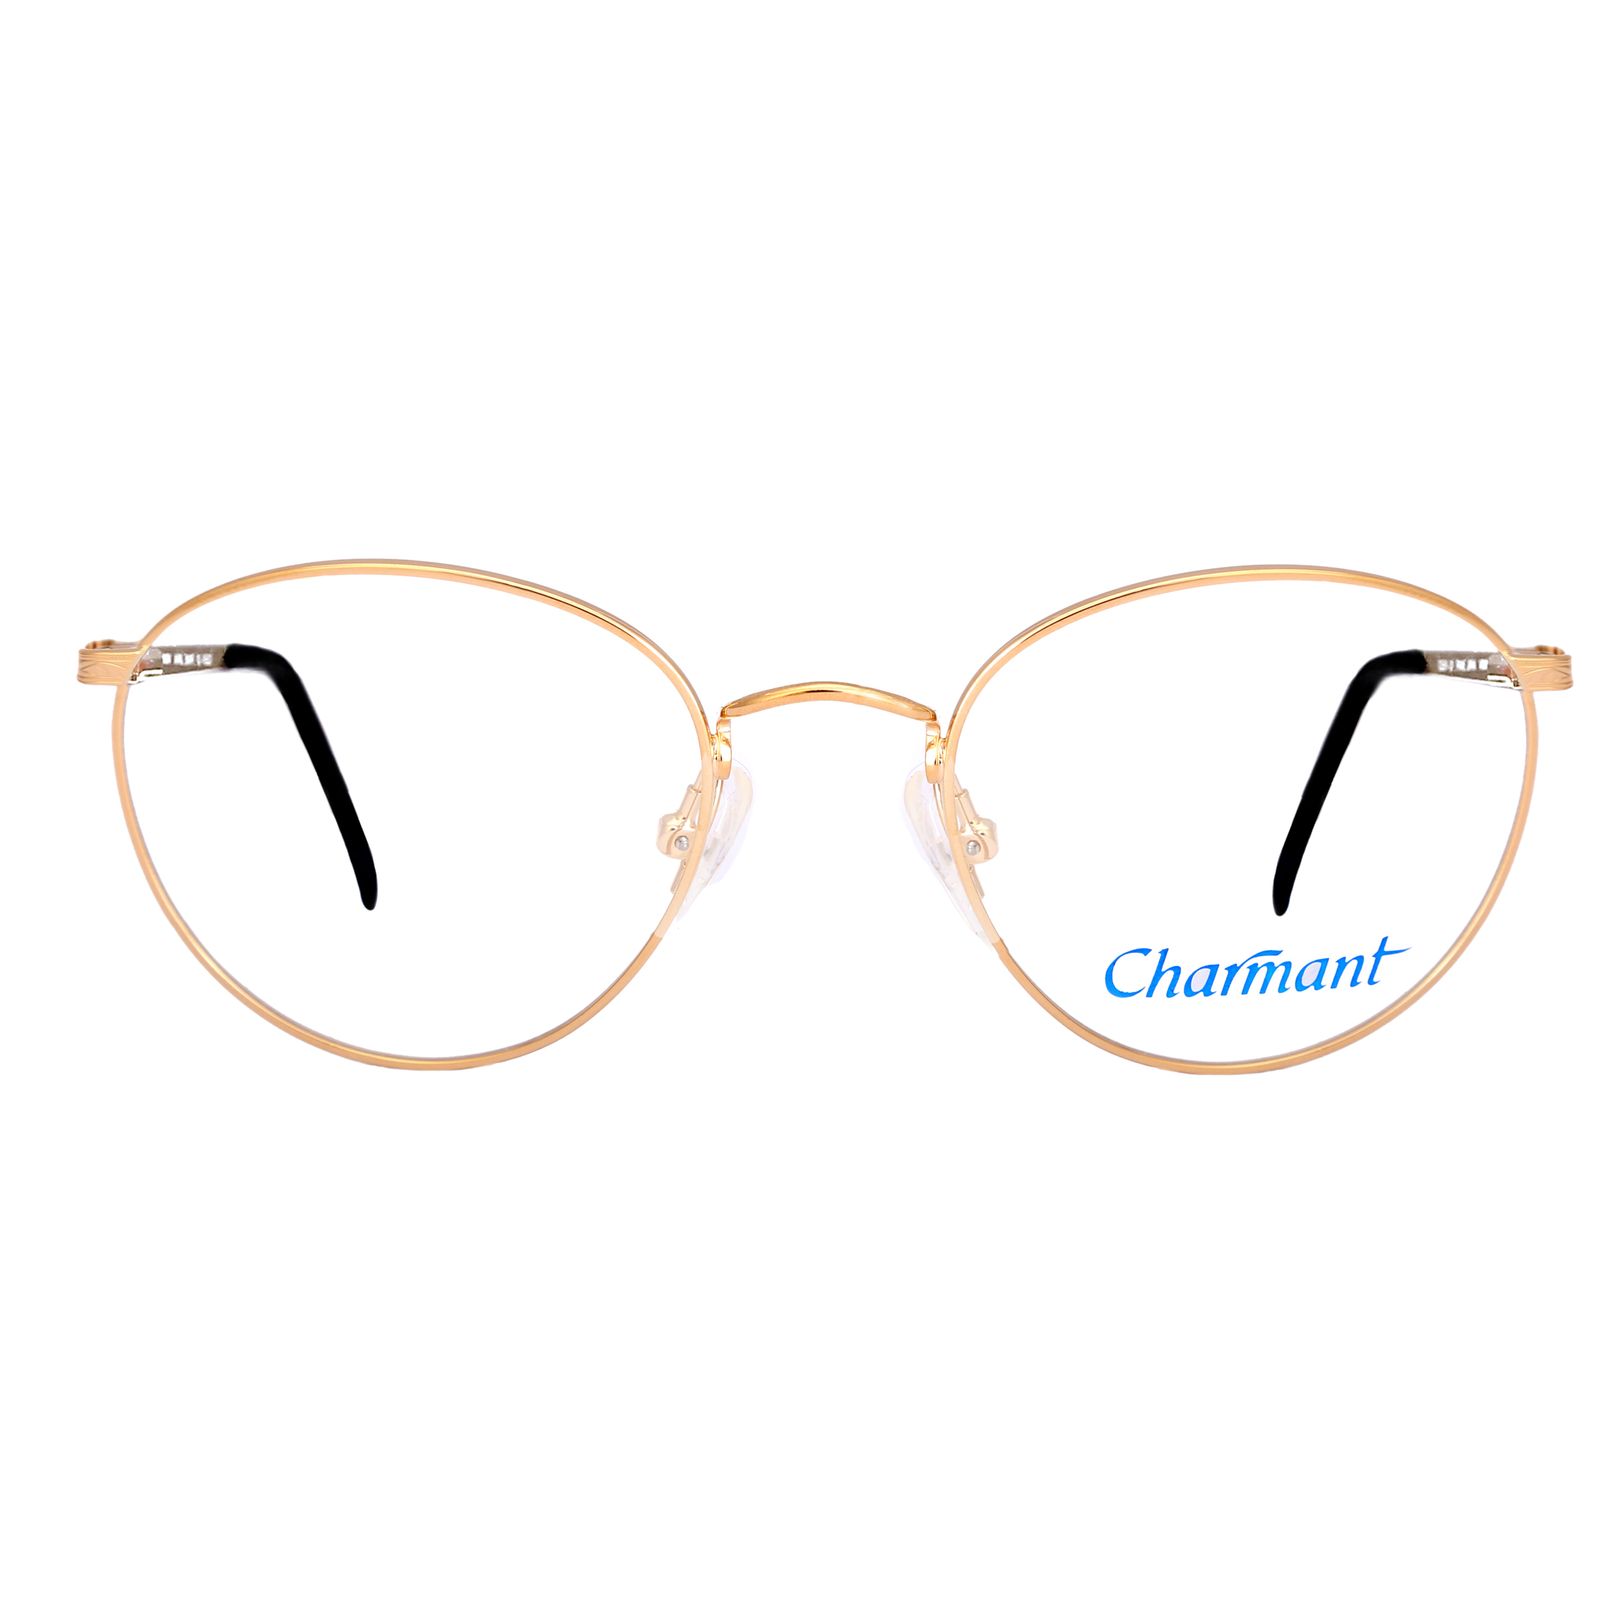 فریم عینک طبی چارمنت مدل 4247 -  - 1